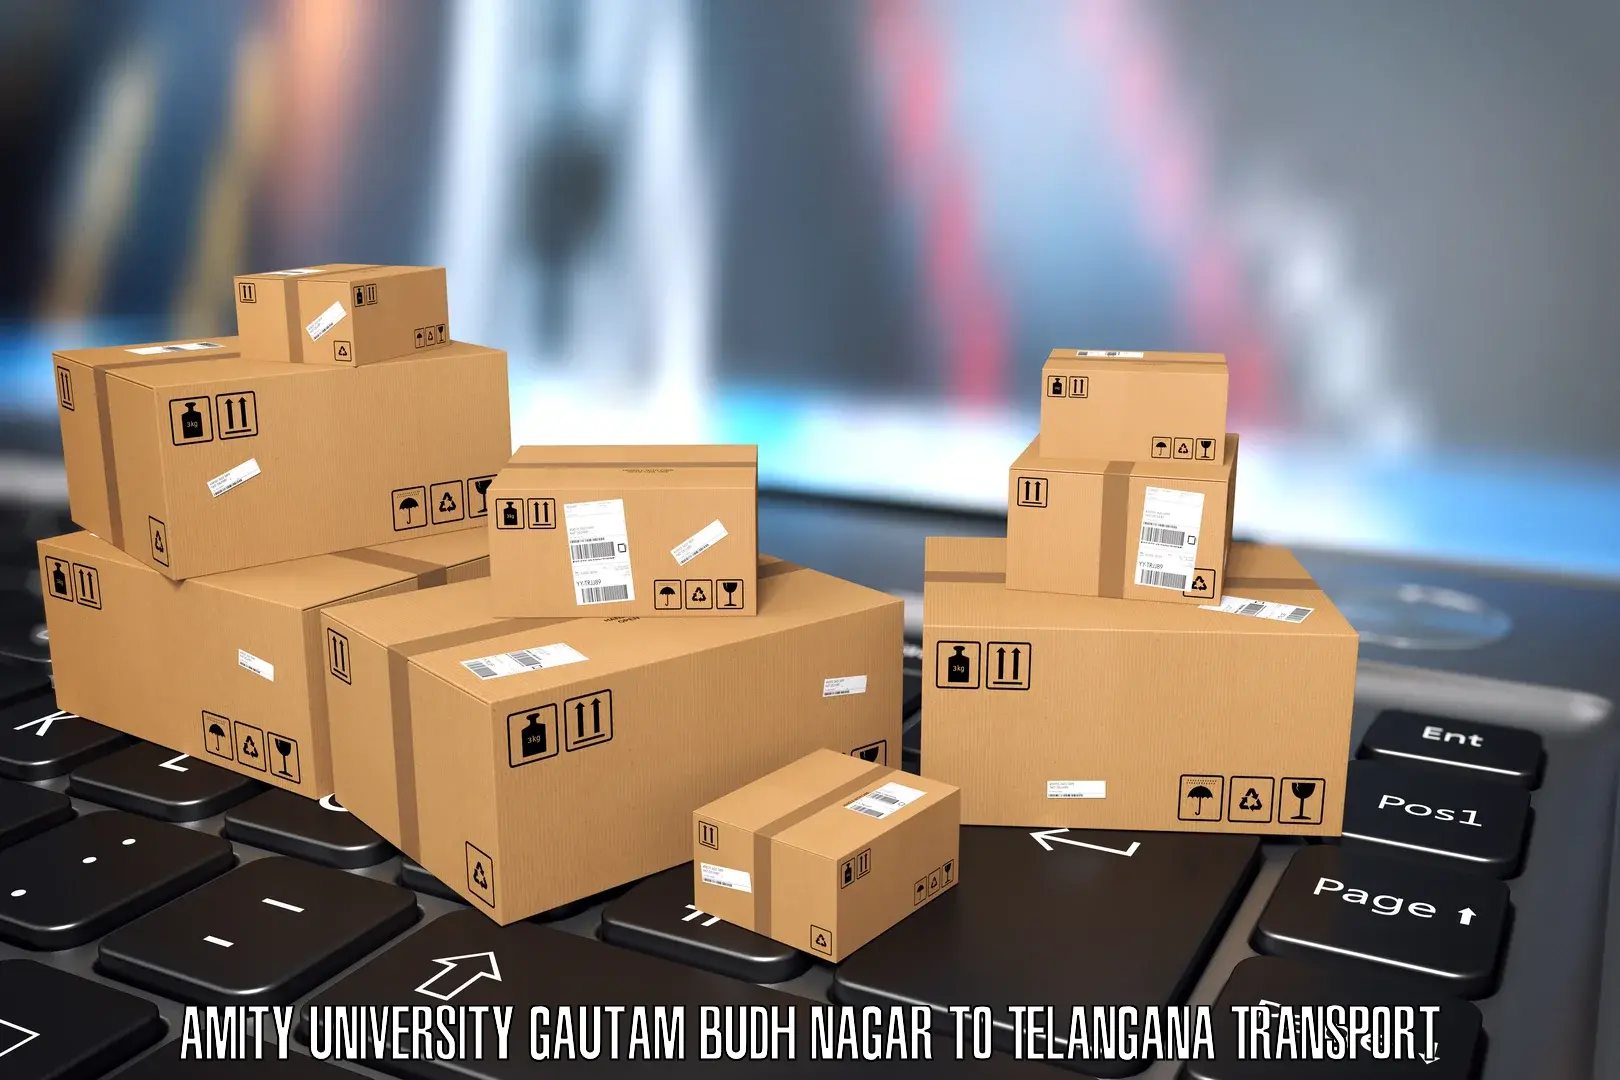 Vehicle parcel service Amity University Gautam Budh Nagar to Tandur